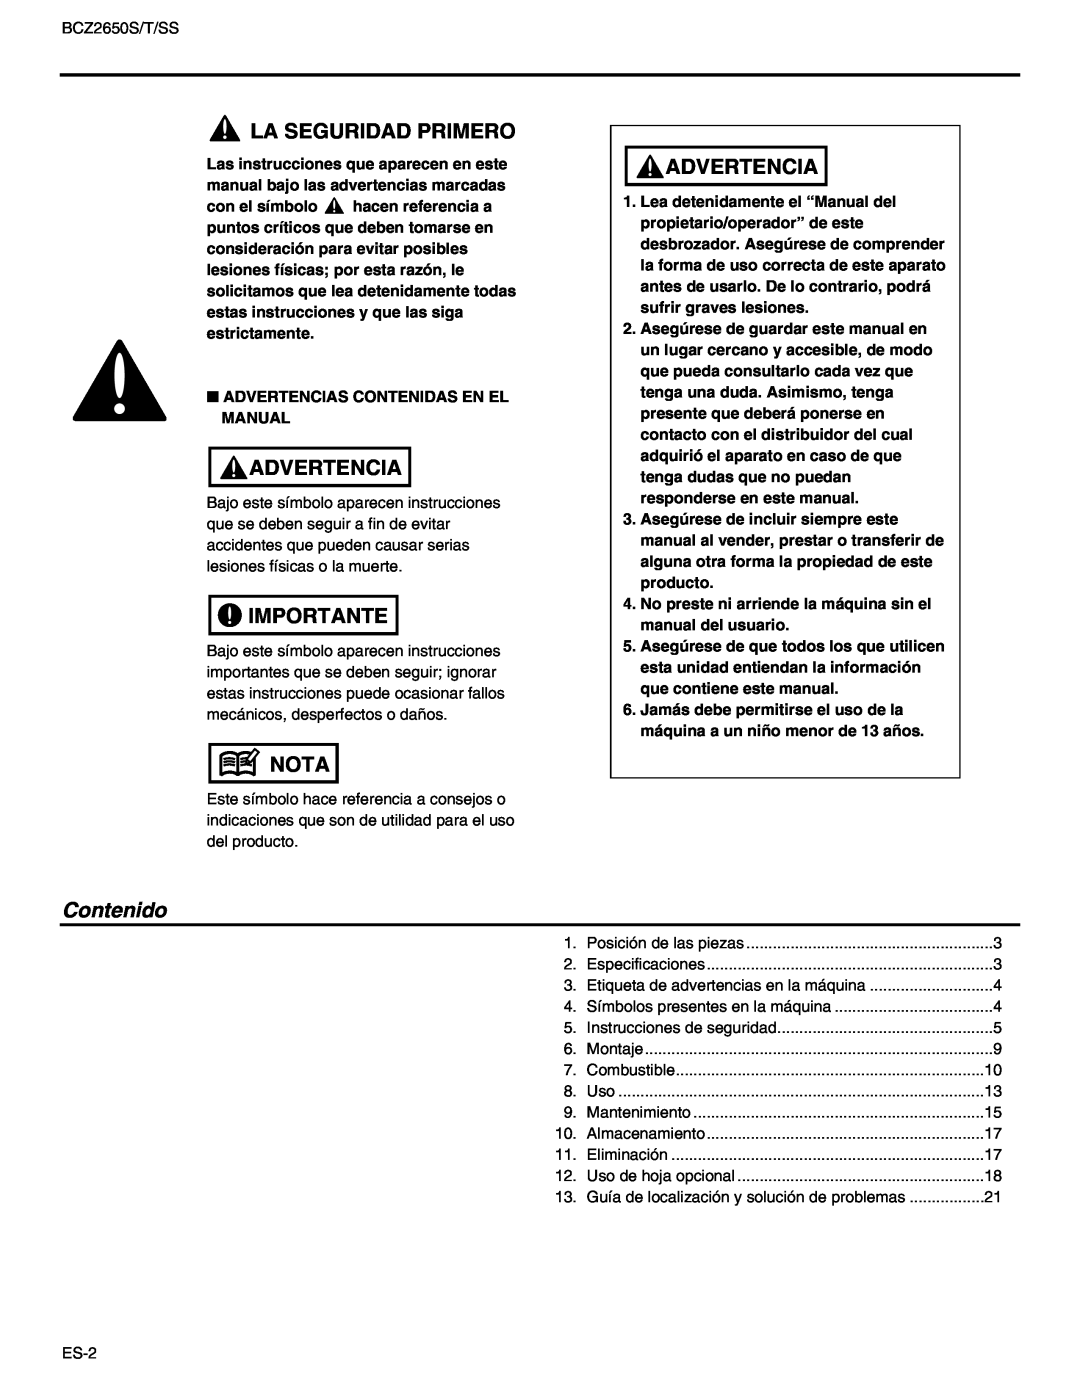 RedMax BCZ2650SS, BCZ2650T manual La Seguridad Primero, Advertencia, Importante, Nota, Contenido 